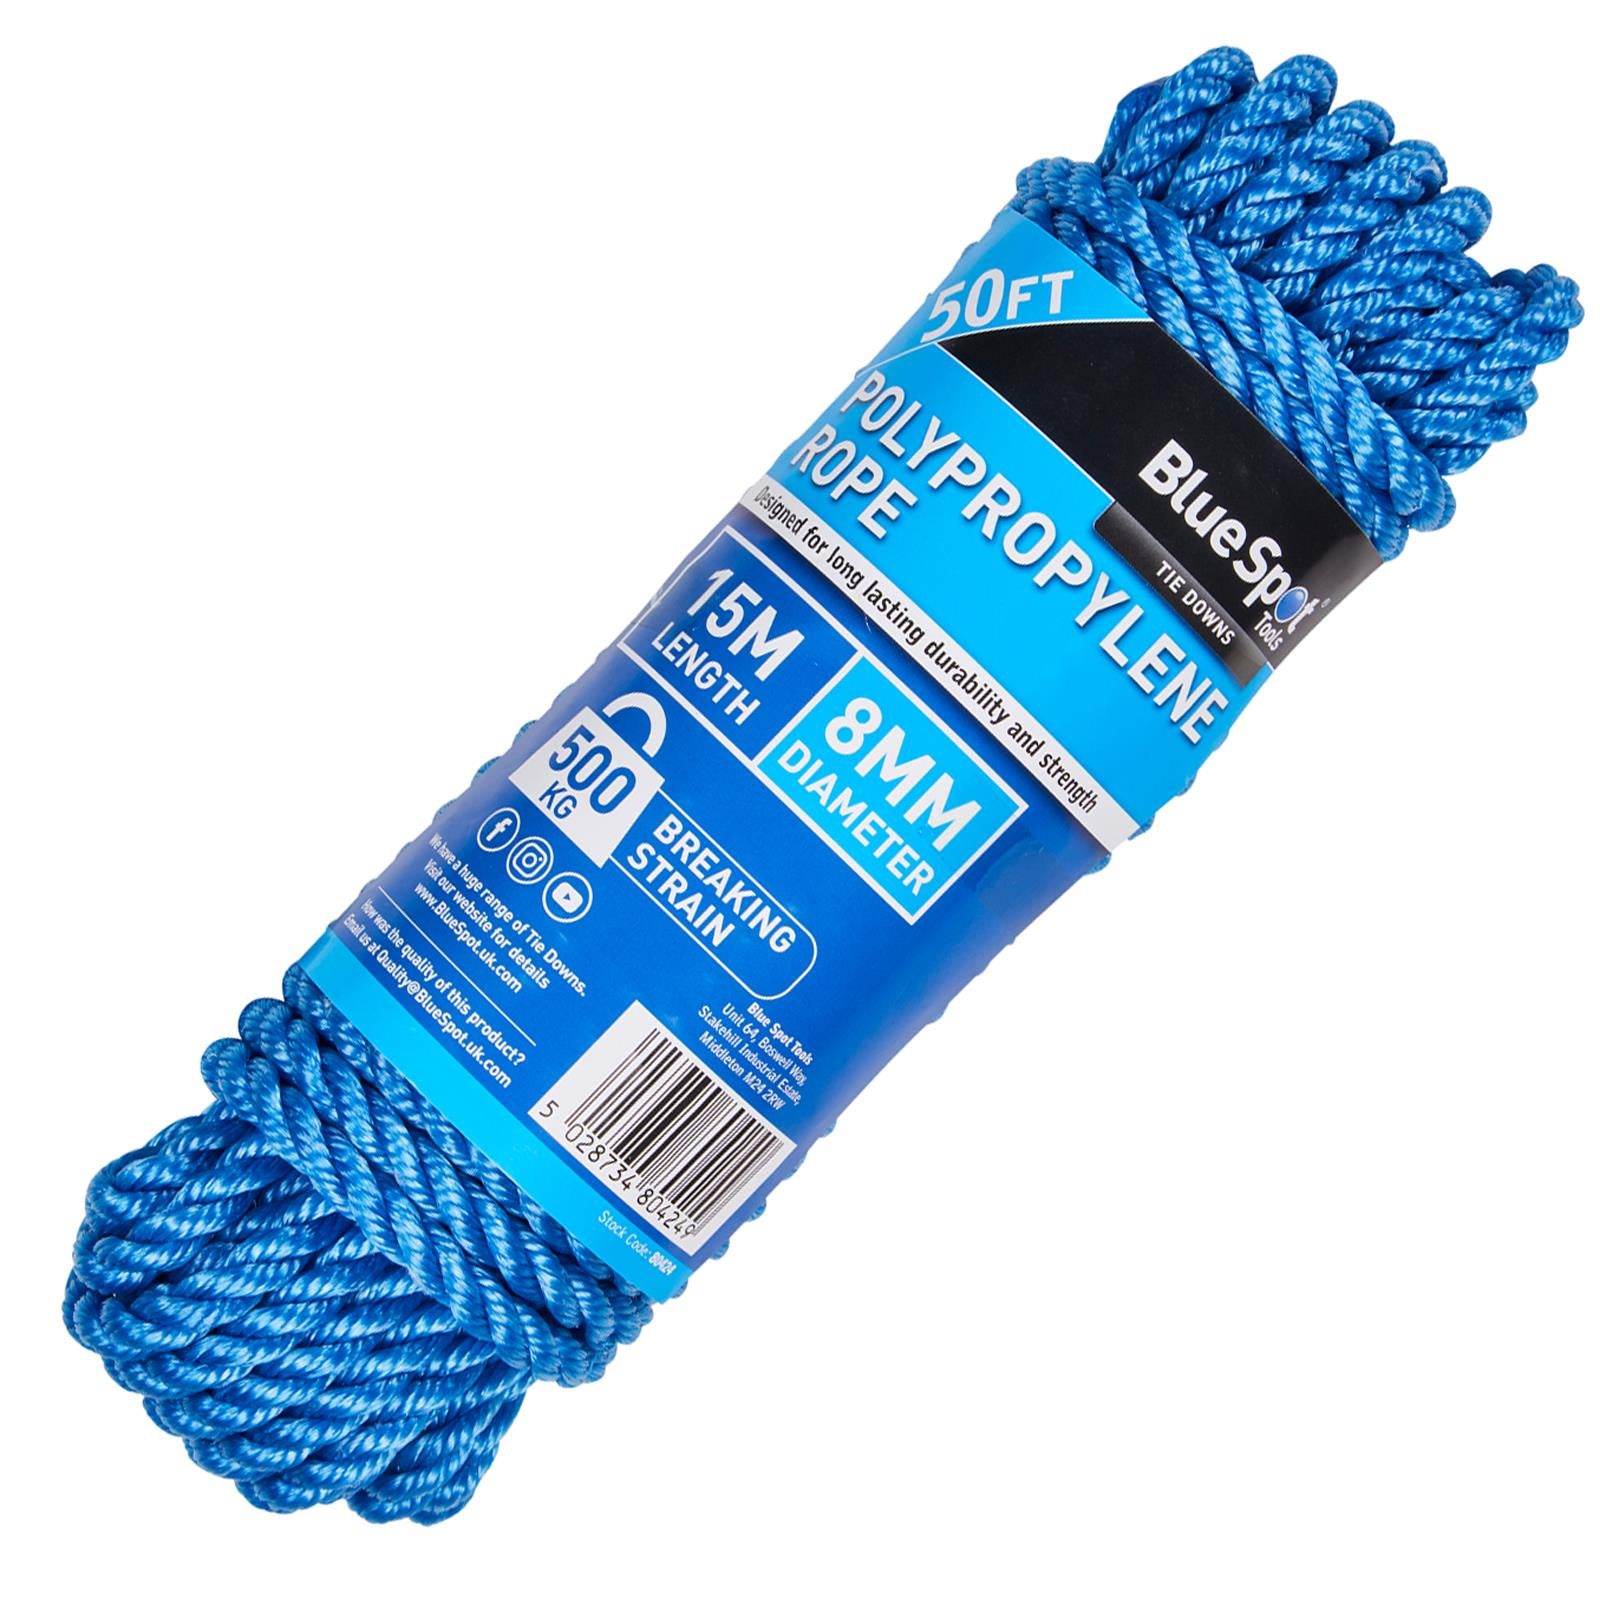 BlueSpot Polypropylene Rope Blue 15m x 8mm 50ft